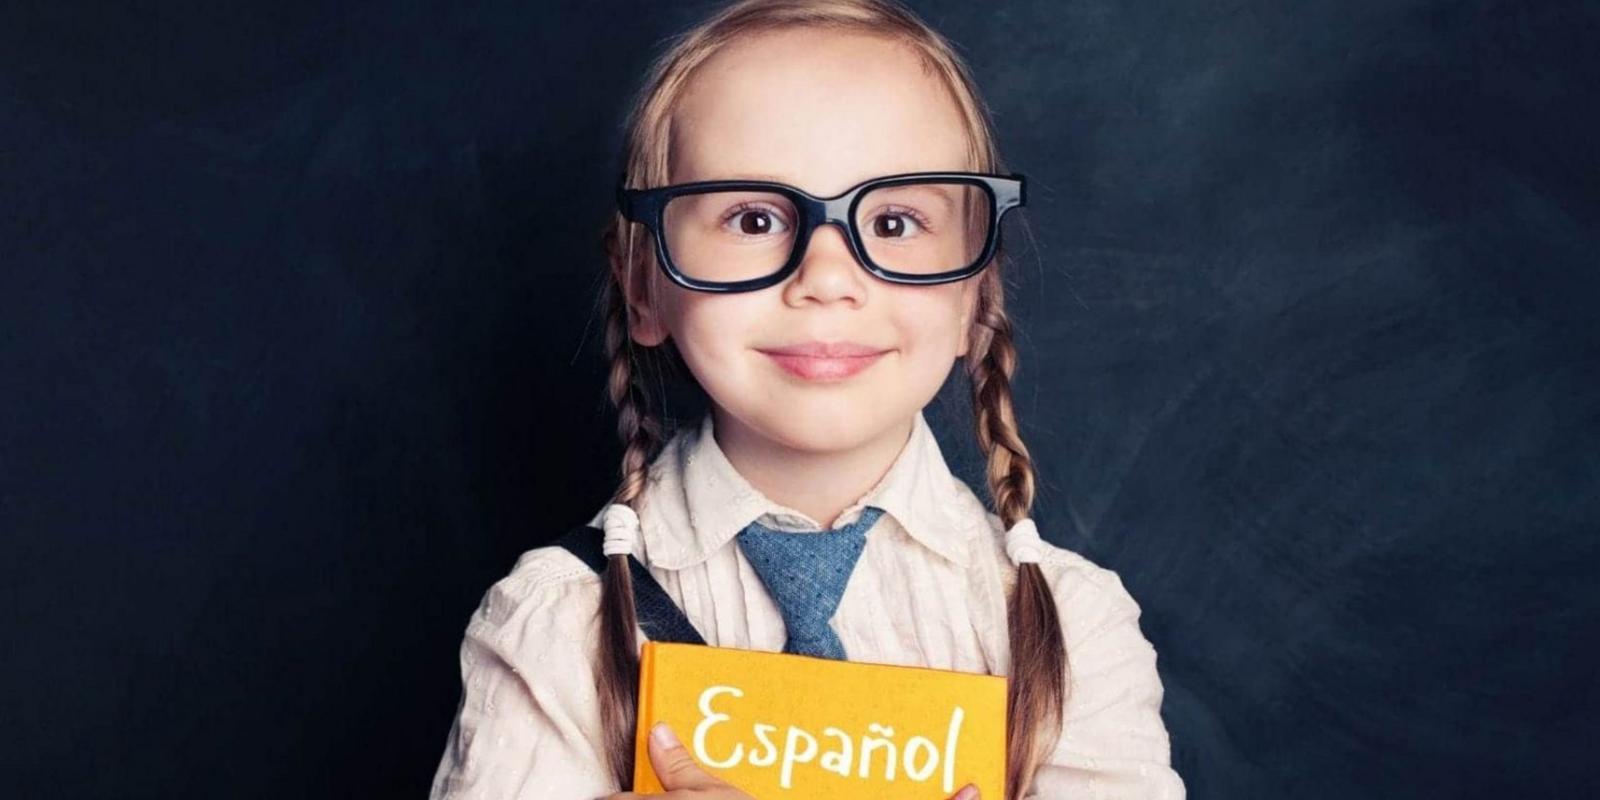 Aprender español es fácil para todo el mundo, incluso los niños. Xuexi-Xibanyayu.com